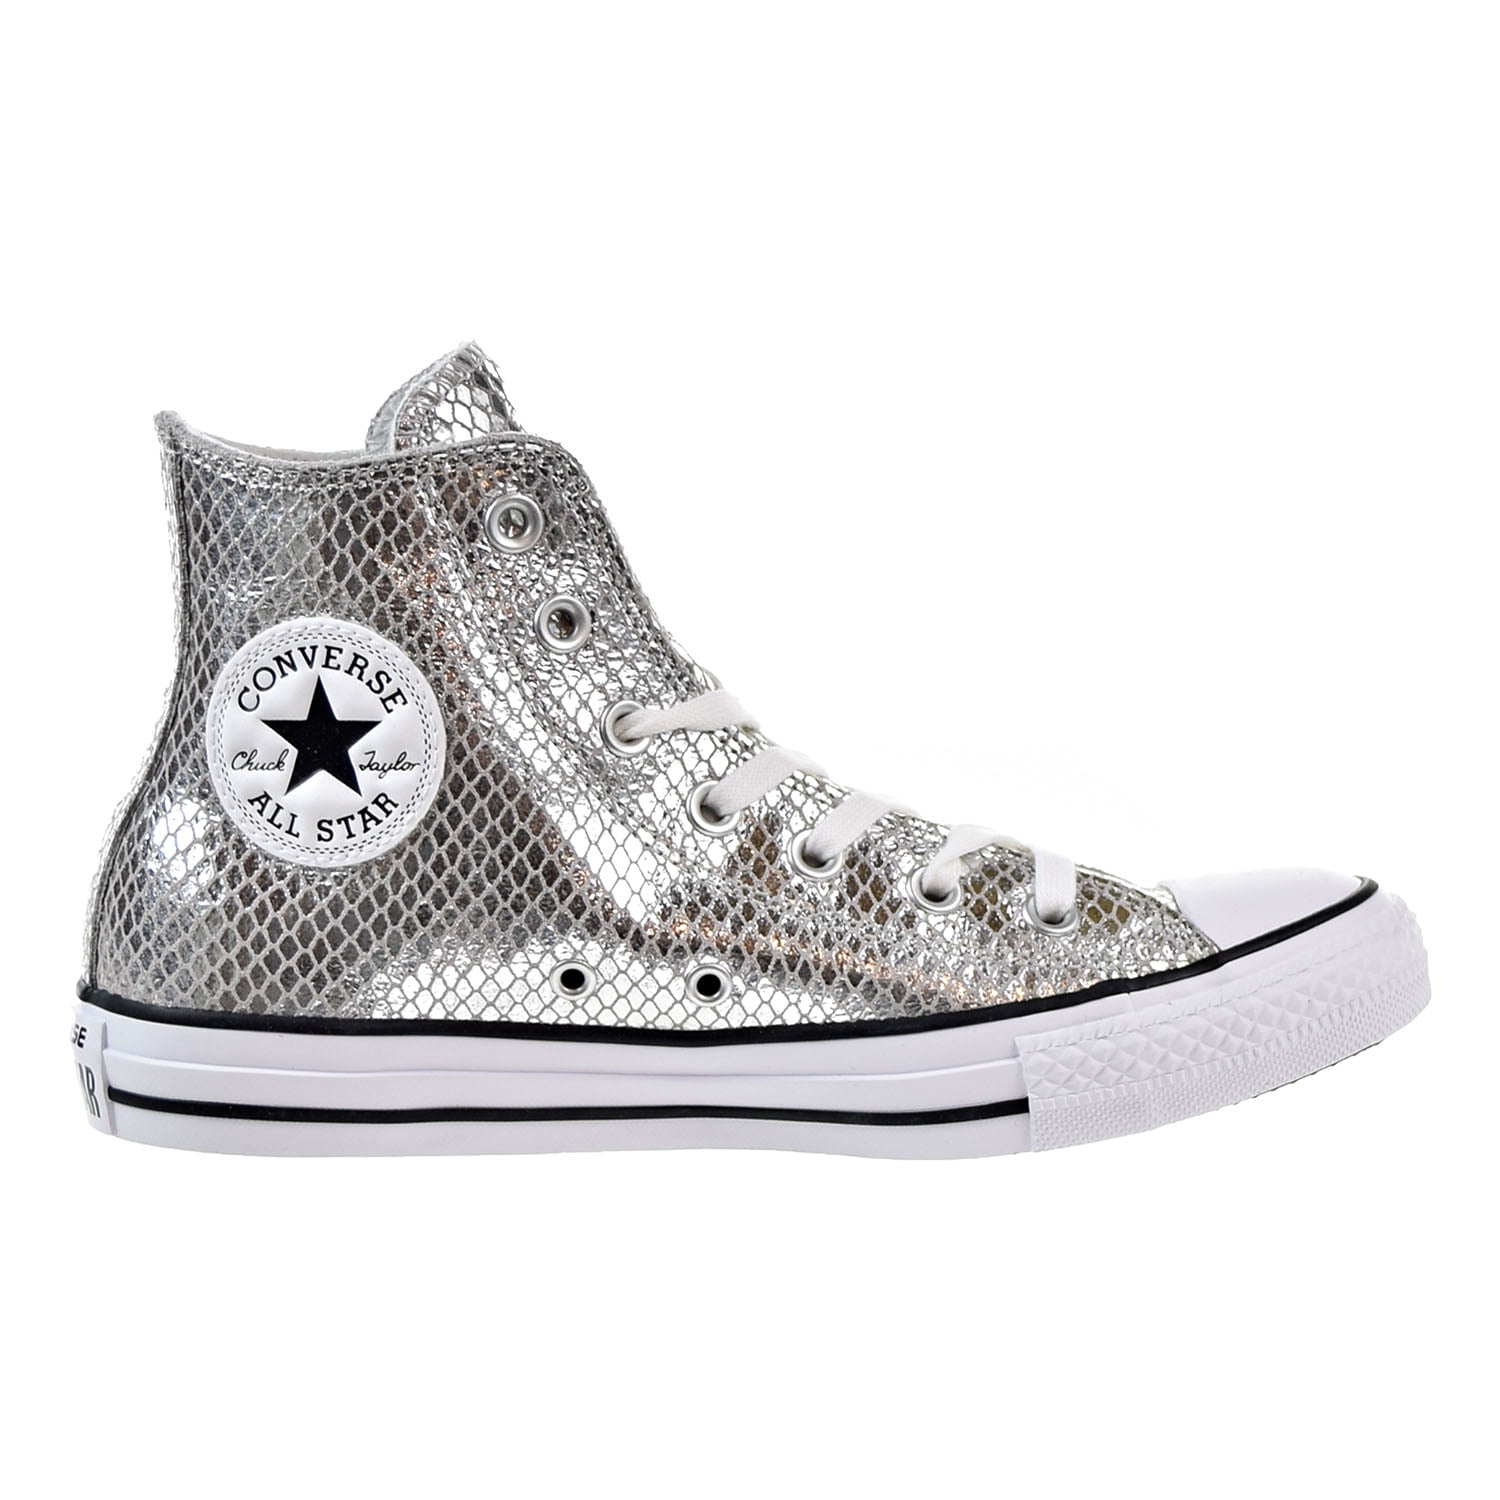 Novela de suspenso Derechos de autor Comorama Converse Chuck Taylor All Star High Top Women's Shoes Silver/Black/White  555965c - Walmart.com